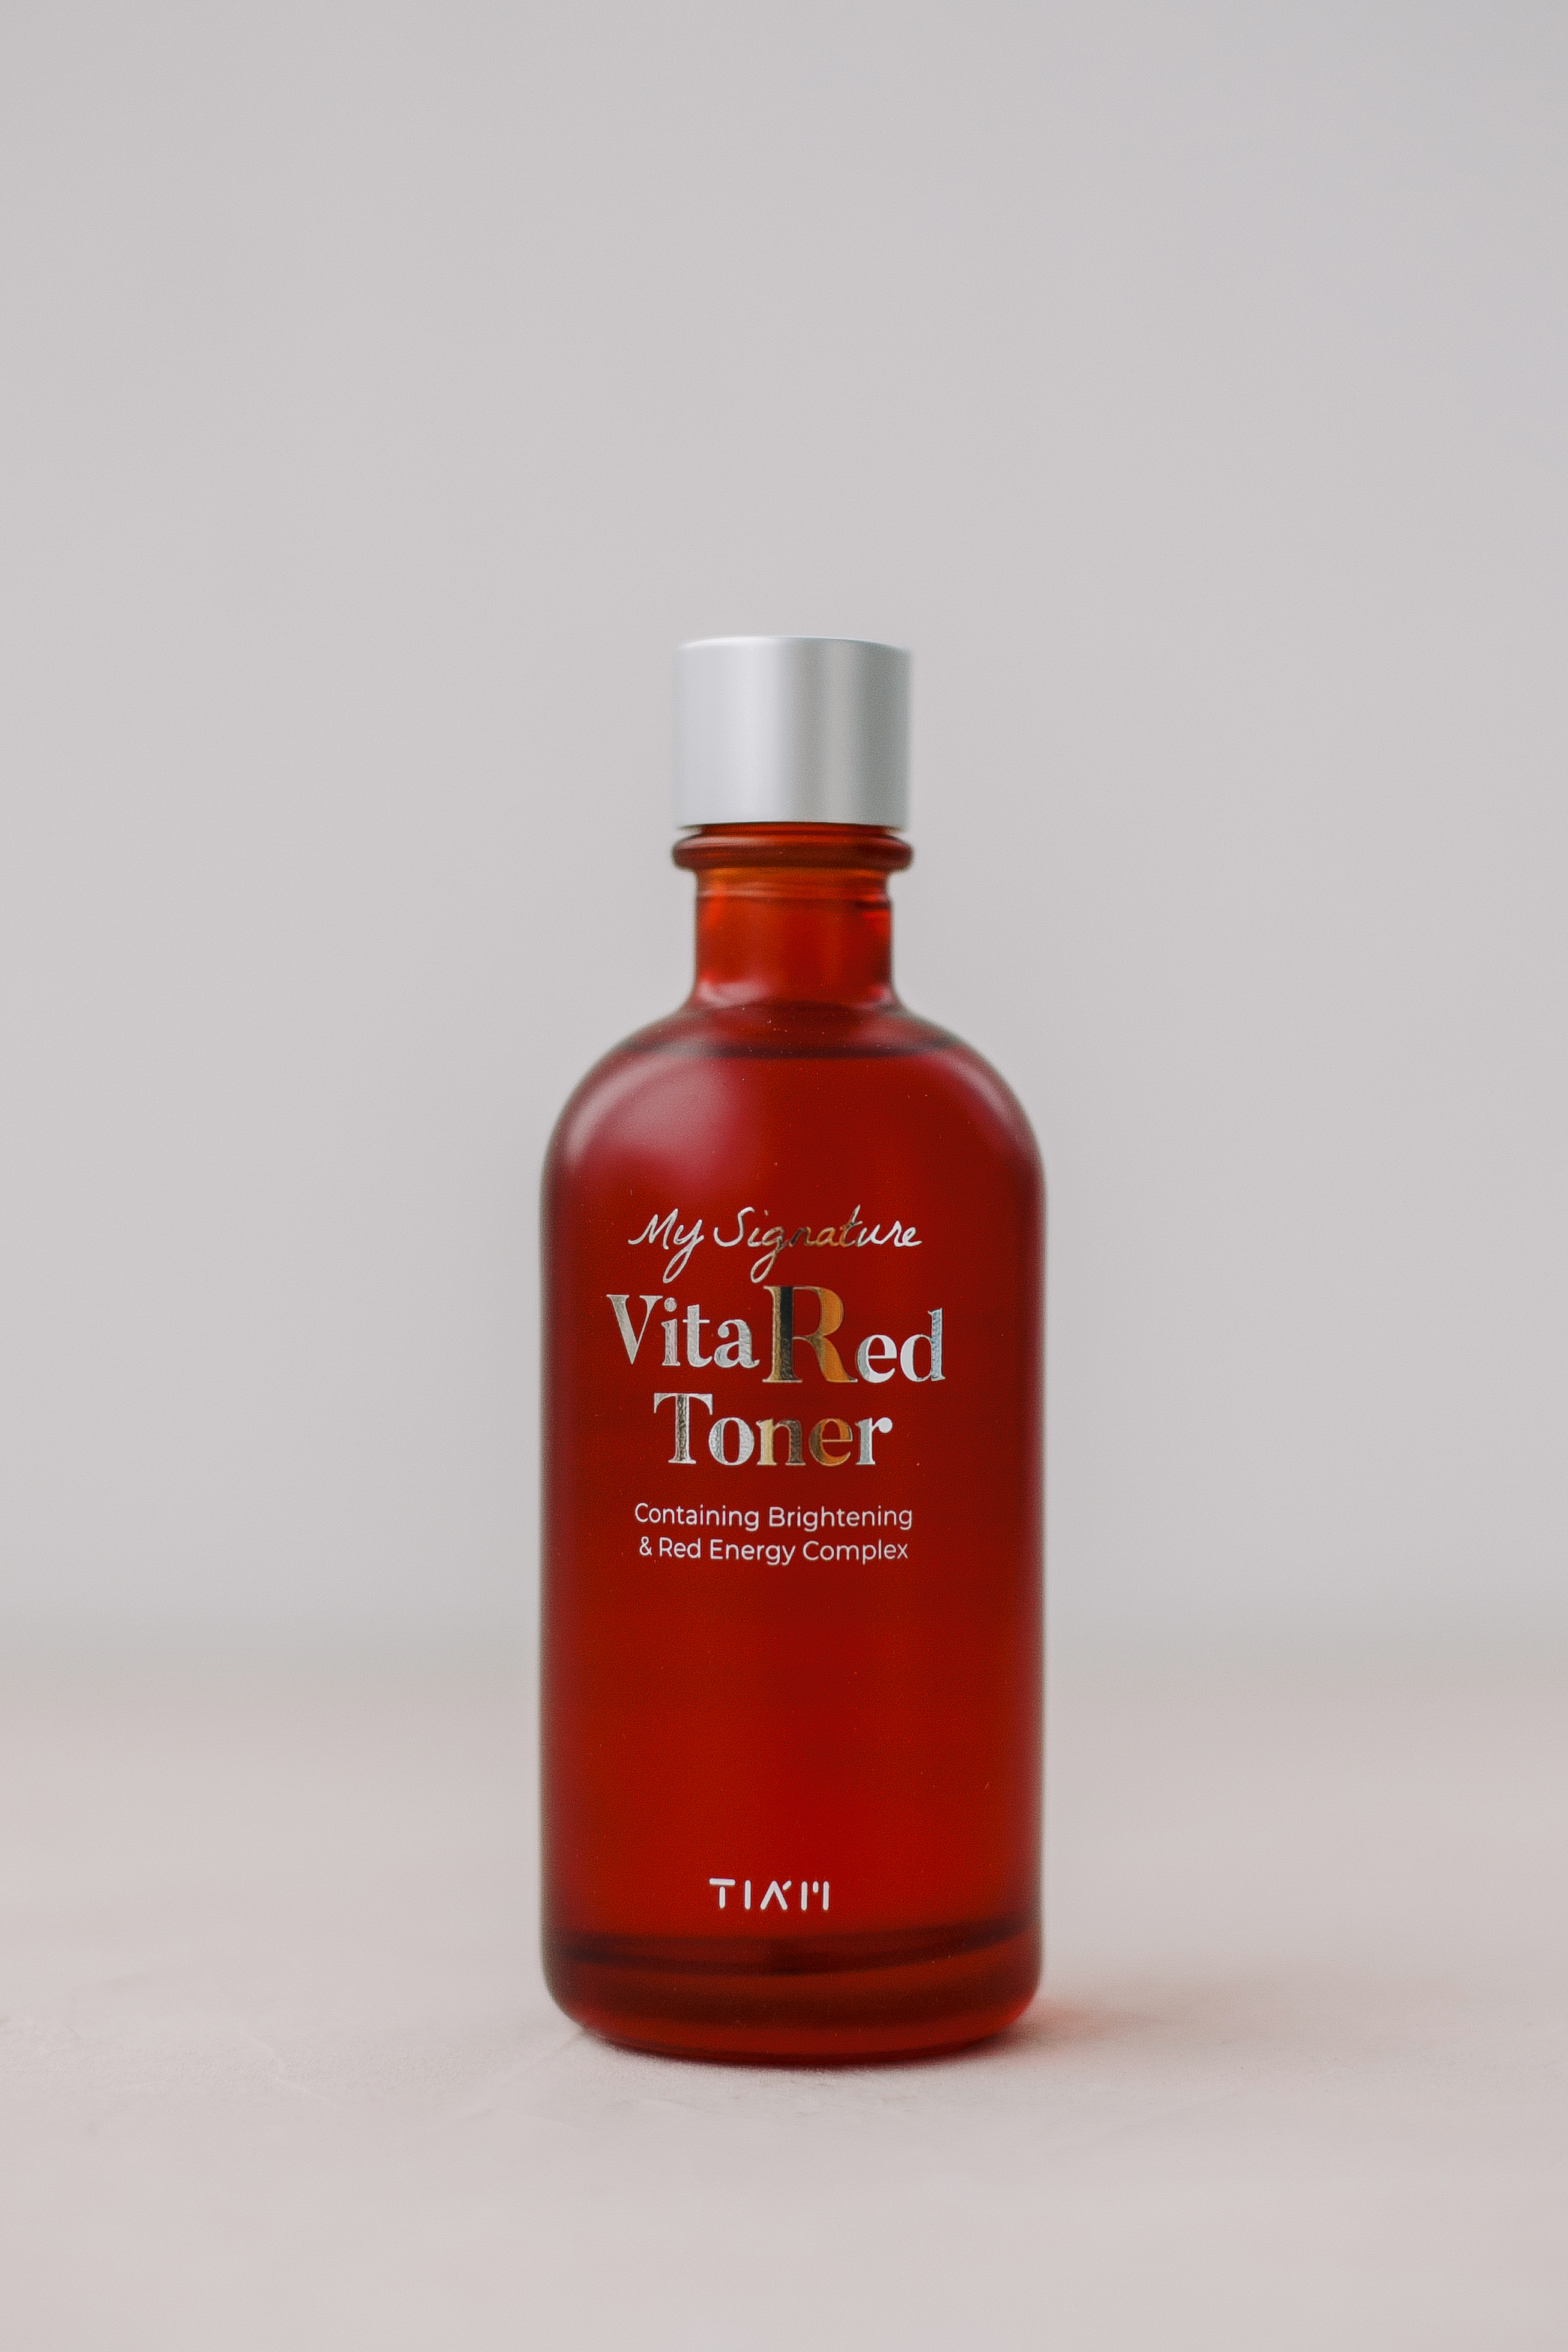 Витаминный тонер, способный вернуть коже здоровое свечение и мягкий румянец TIAM MY Signature Vita Red Toner 130ml